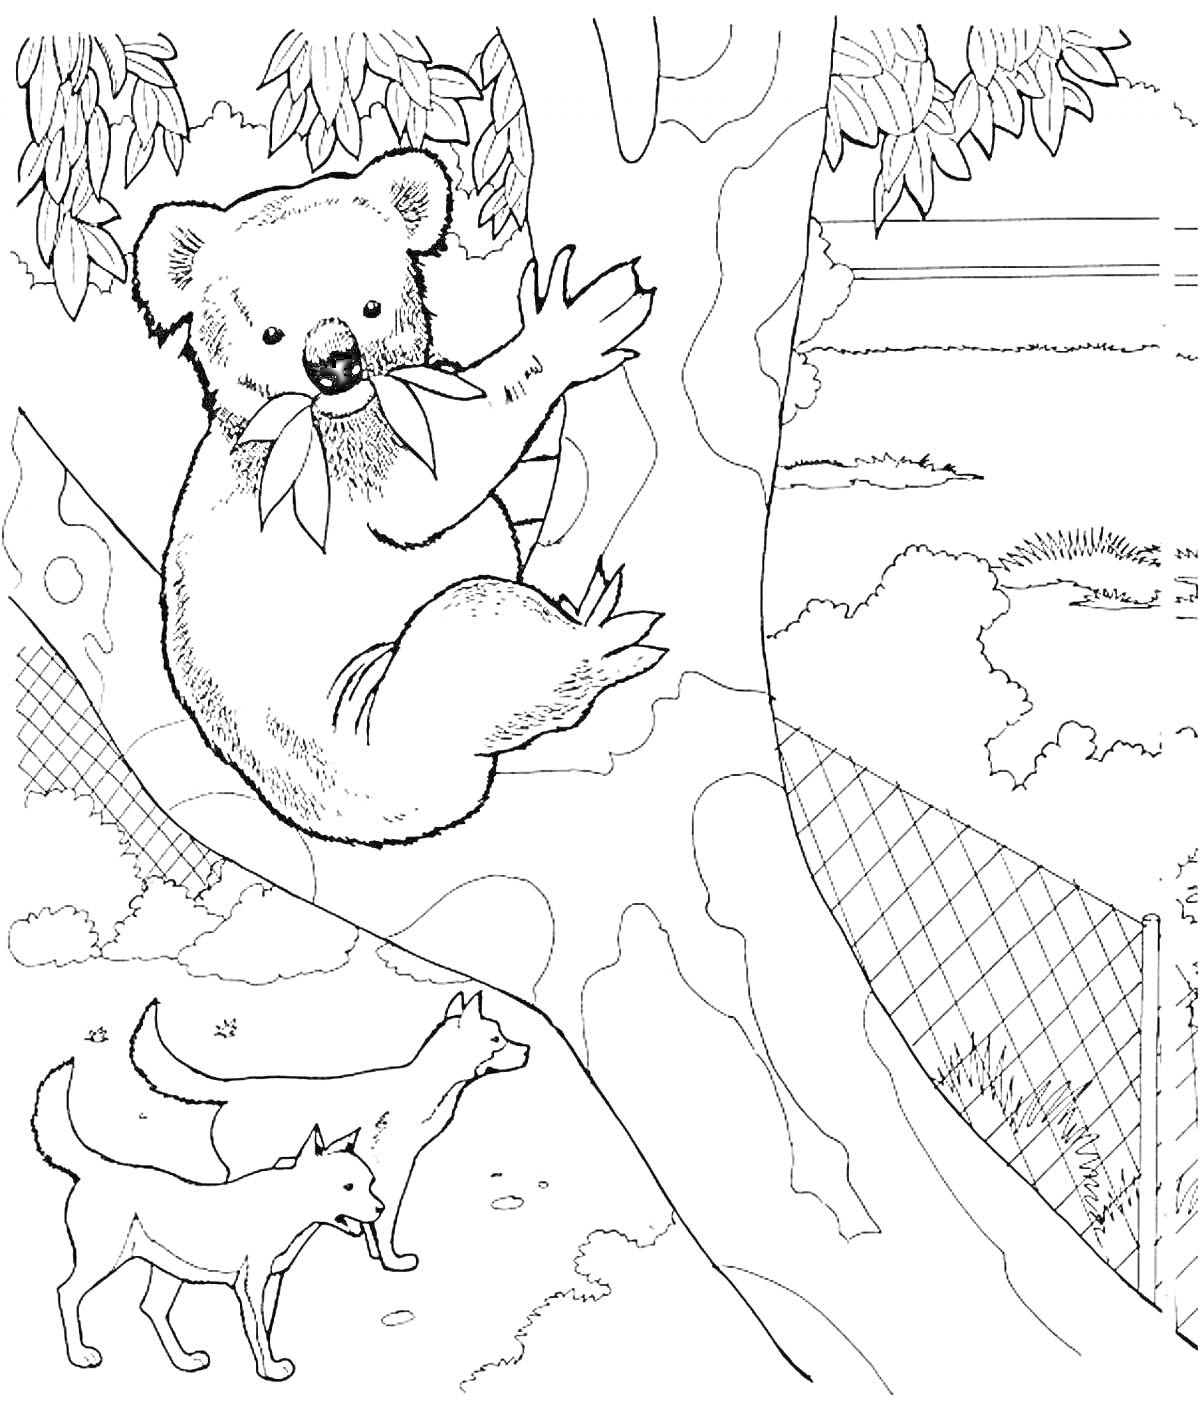 Раскраска коала на дереве, два динго на земле и забор